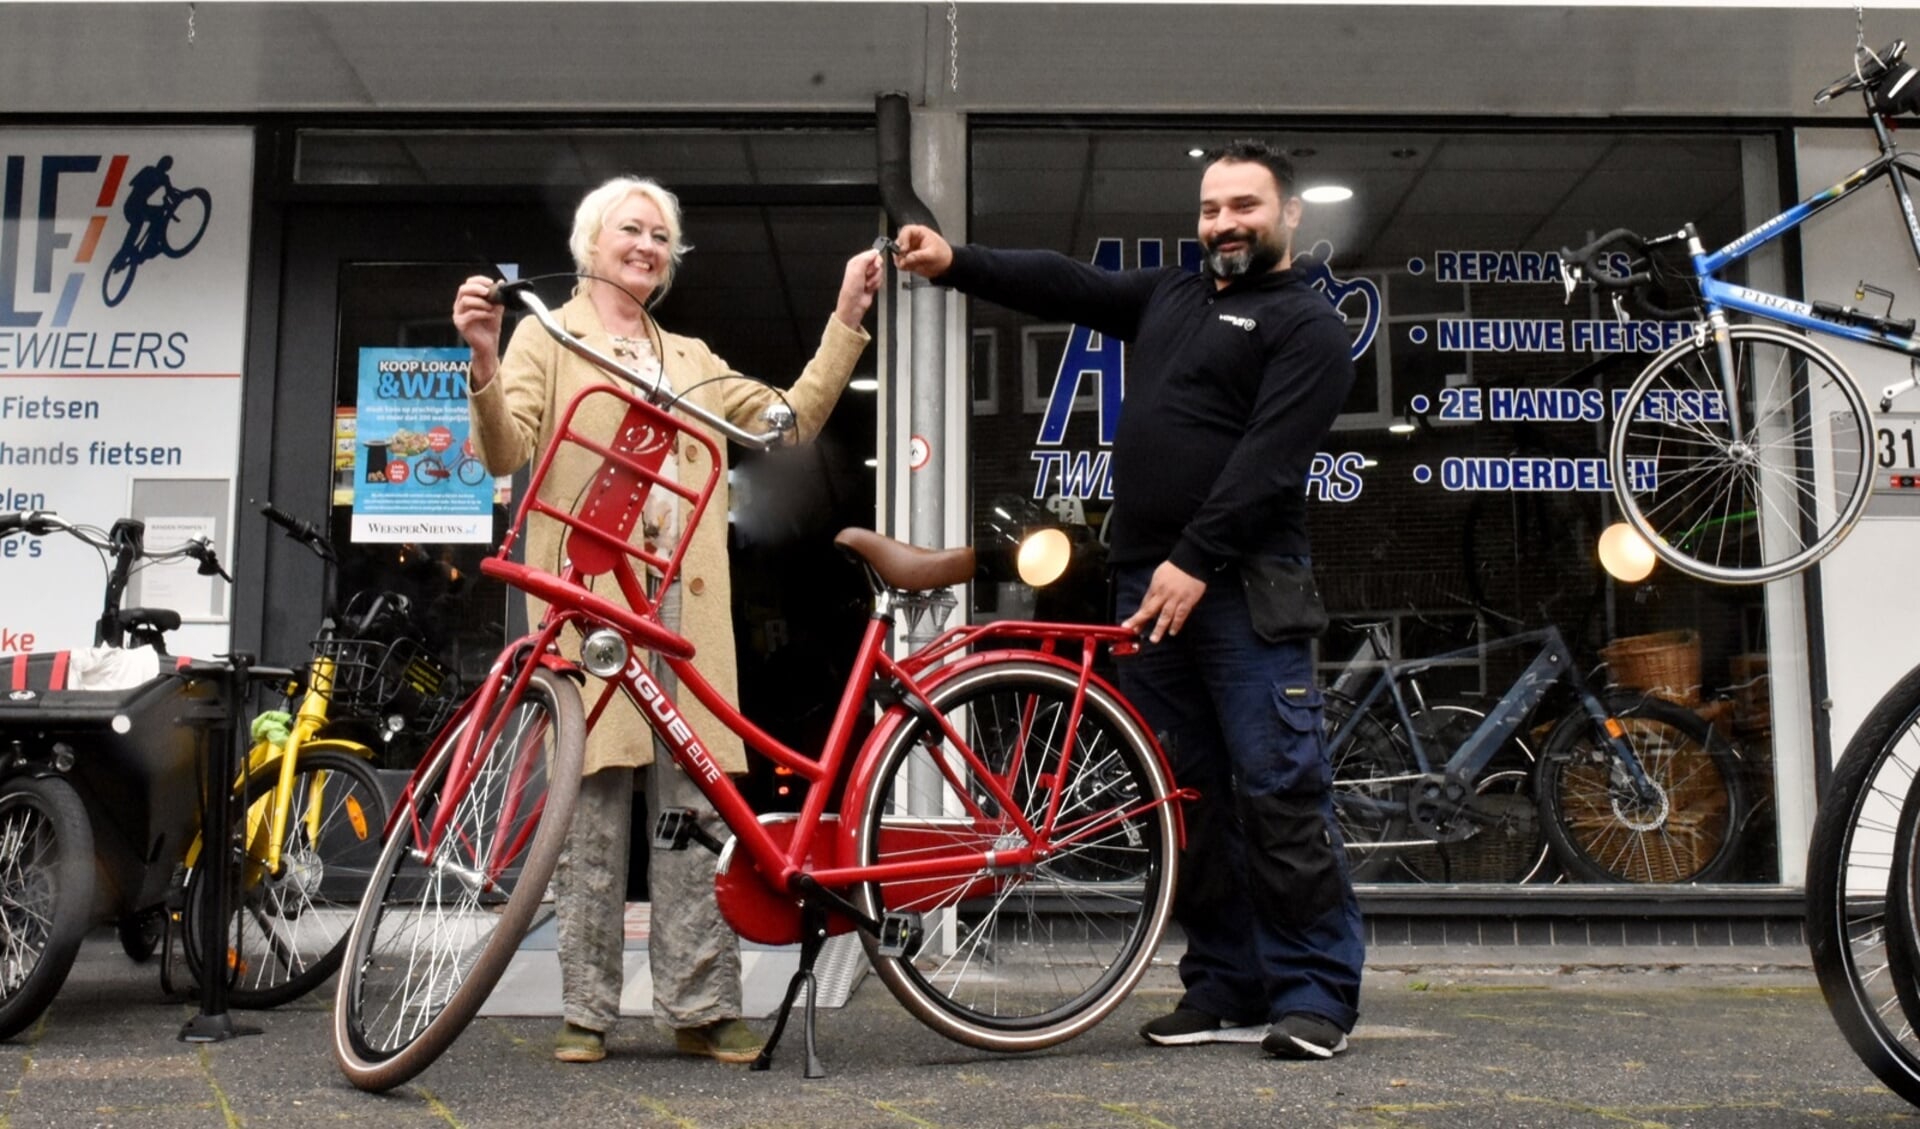 Ilona van der Enden rijdt op een nieuwe Voque Elite fiets, beschikbaar gesteld door Alf Tweewielers.